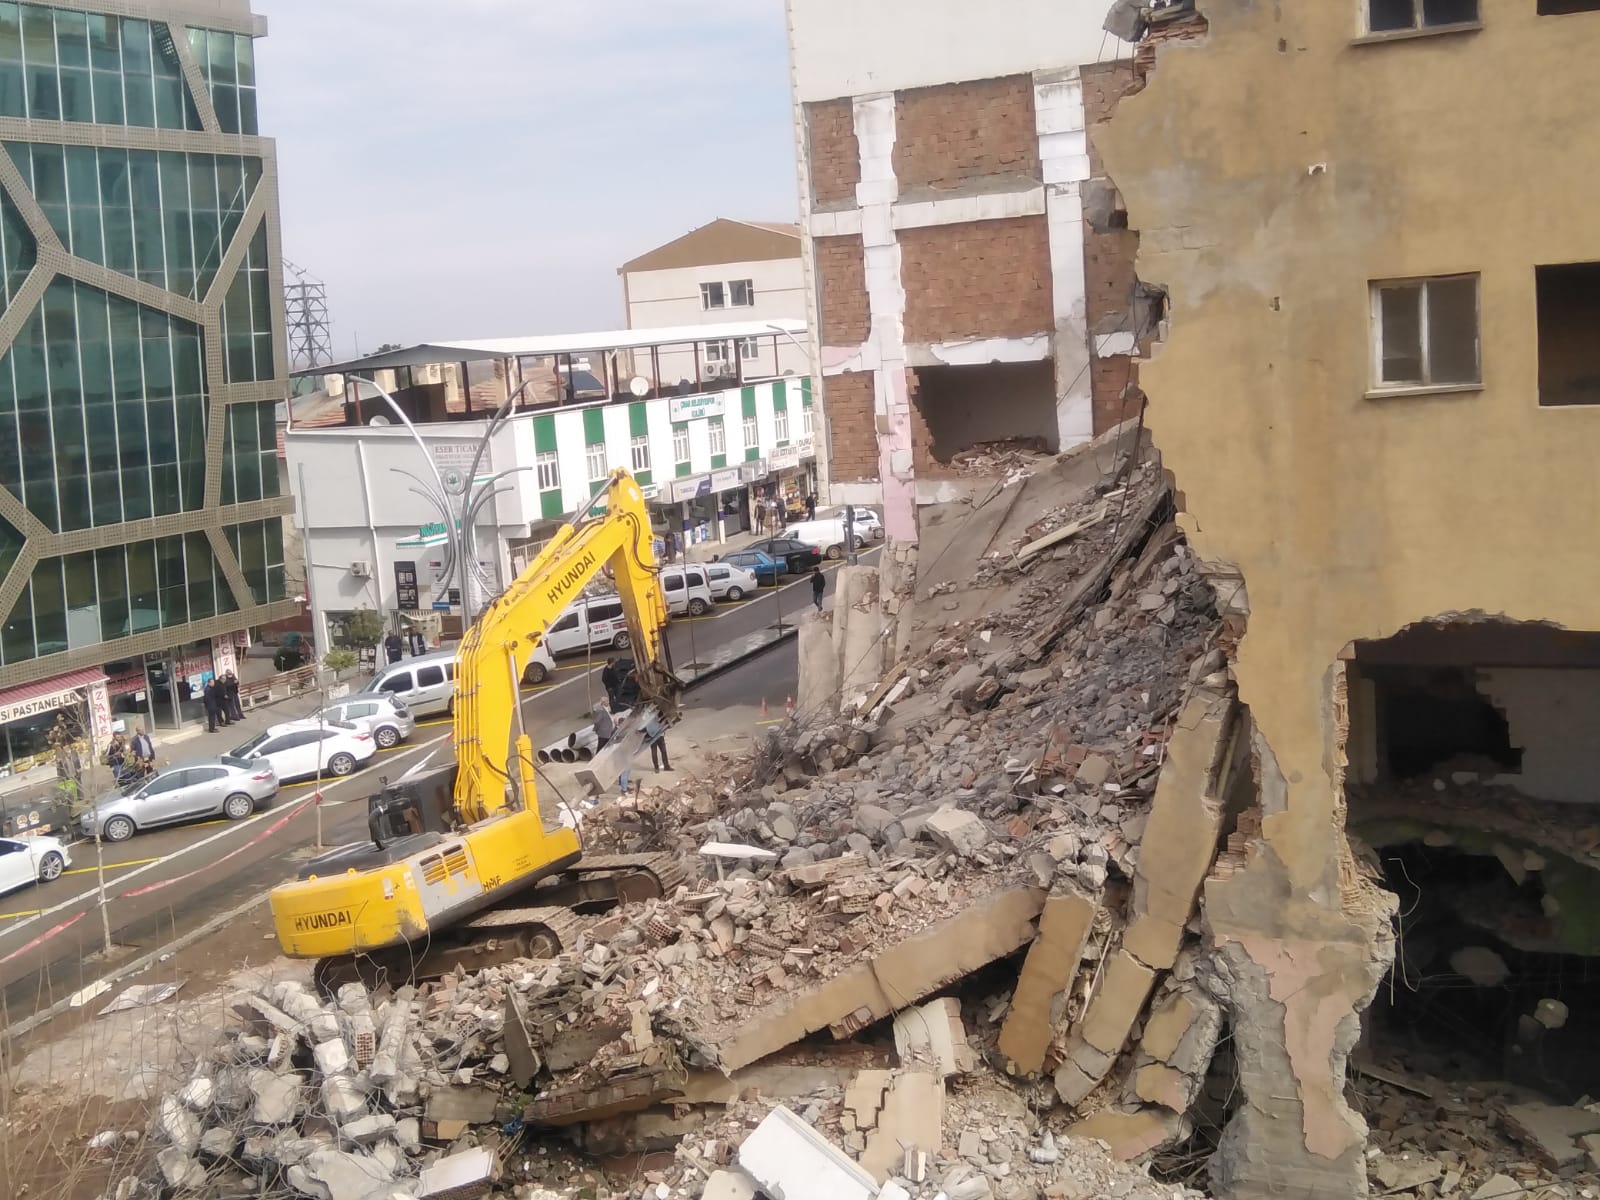 VİDEO - Çınar’da boşaltılan bina yıkıldı